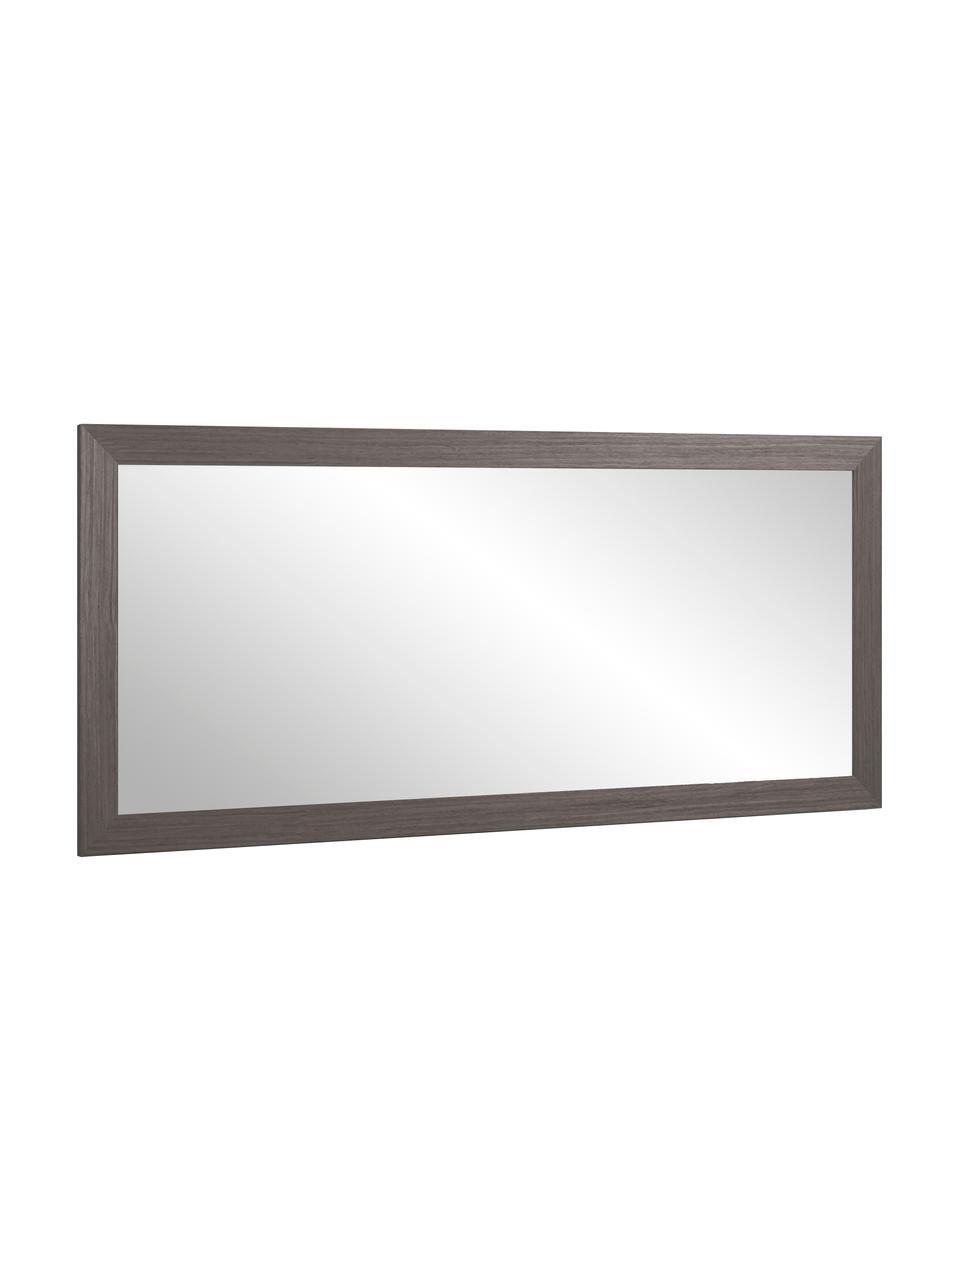 Specchio rettangolare da parete con cornice in legno marrone scuro Yvaine, Cornice: legno, Superficie dello specchio: lastra di vetro, Marrone, Larg. 81 x Alt. 181 cm